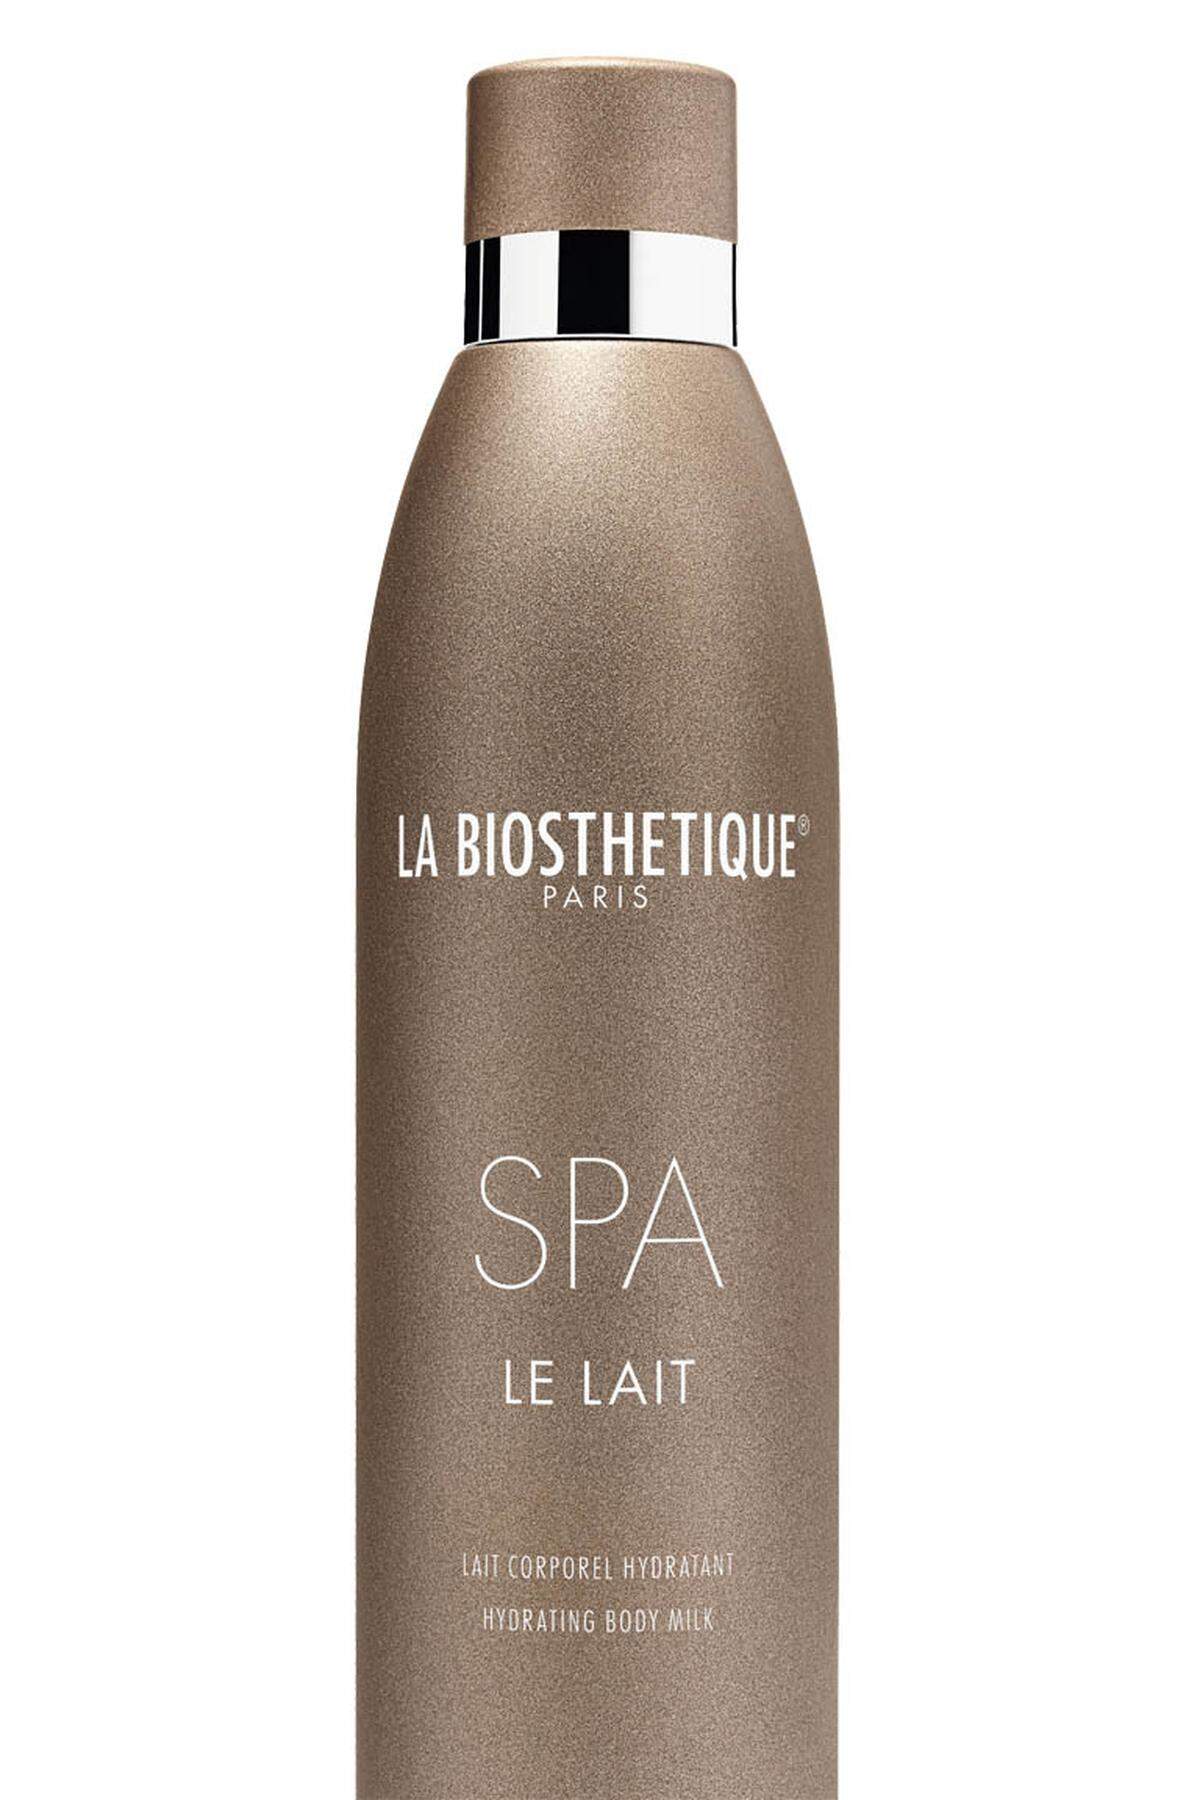 „Le Lait“ aus der Spa Home Kollektioin von La Biosthetique,22,50 Euro, in den La-Biosthetique-Salons erhältlich